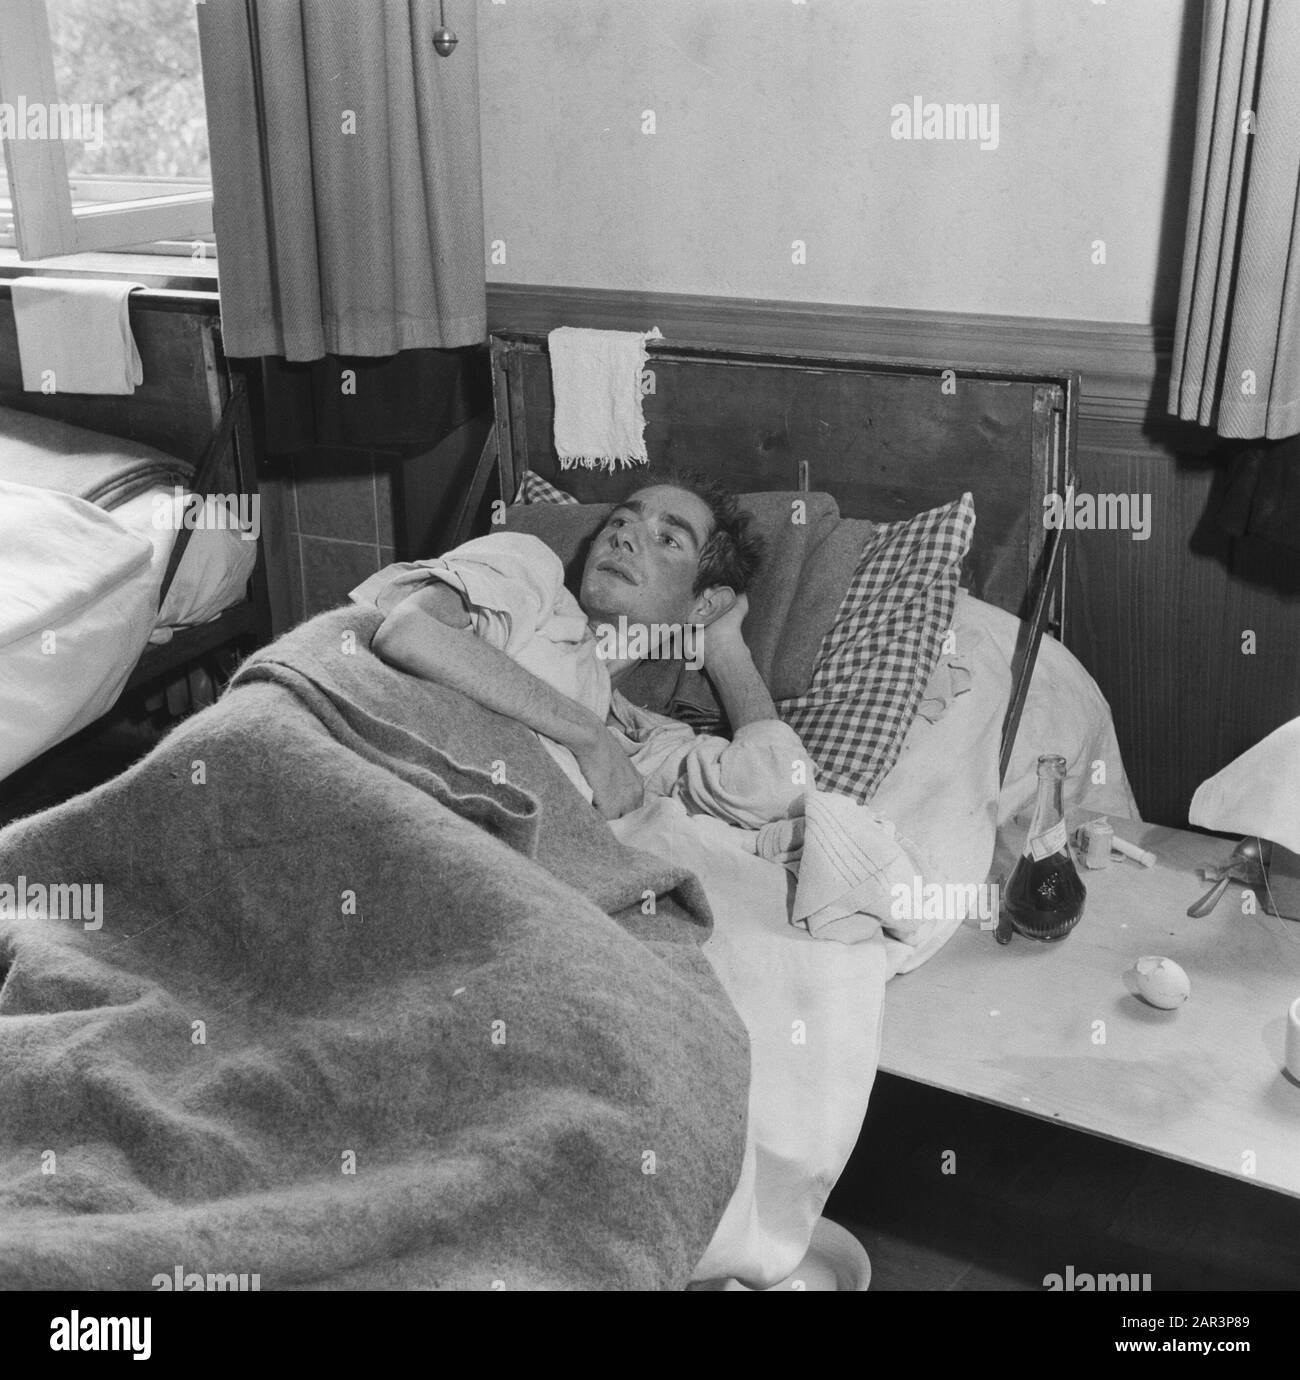 Camp de rapatriement Bergen-Belsen [l'homme est au lit] Date: 1945 lieu: Bergen-Belsen, Allemagne mots clés: Camps de concentration, hommes, rapatriement, seconde Guerre mondiale Banque D'Images